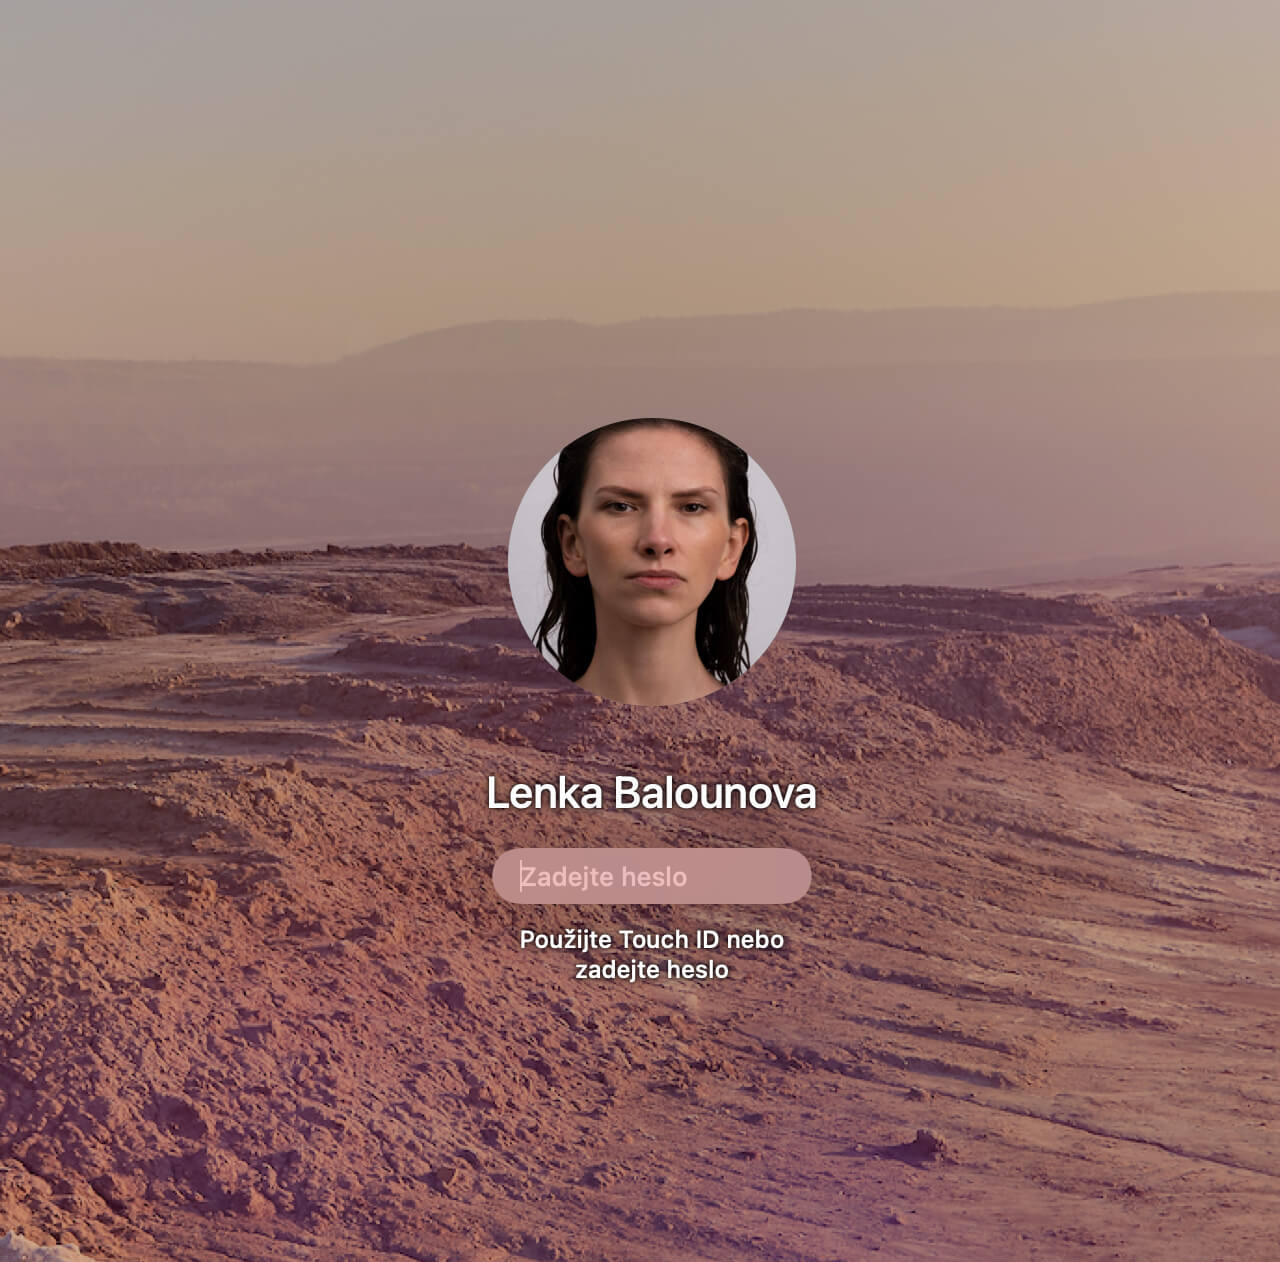 Ein Sperrbildschirm mit Wüstenhintergrund. Als Profilbild zu sehen: das verzerrte Gesicht von Lenka Balounová.